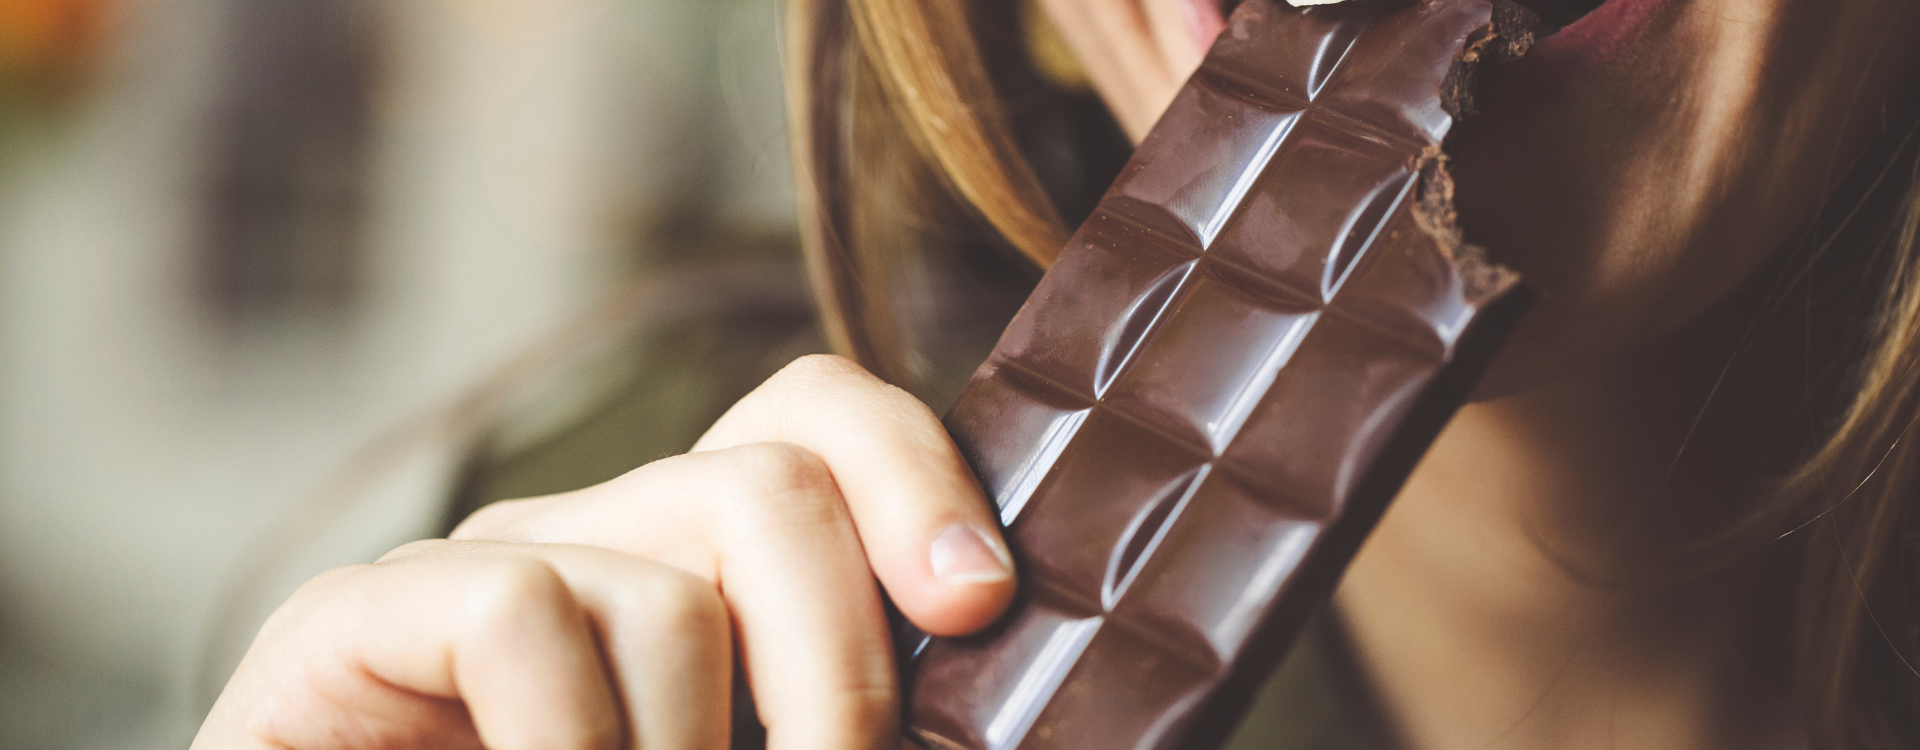 Dlaczego warto jeść czekoladę? - Światowy Dzień Czekolady